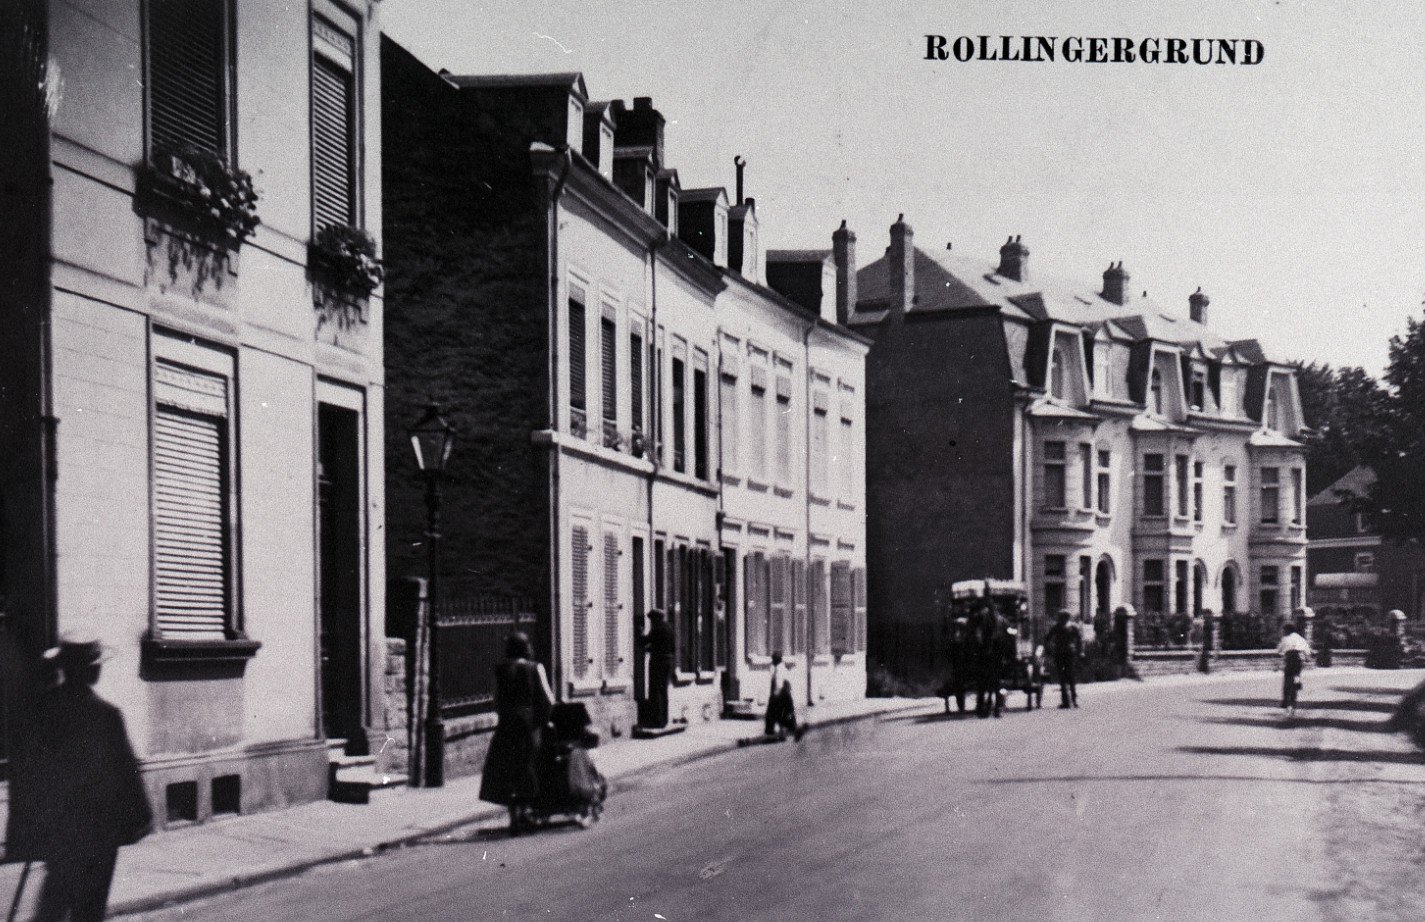  la rue de Rollingergrund vers 1900 